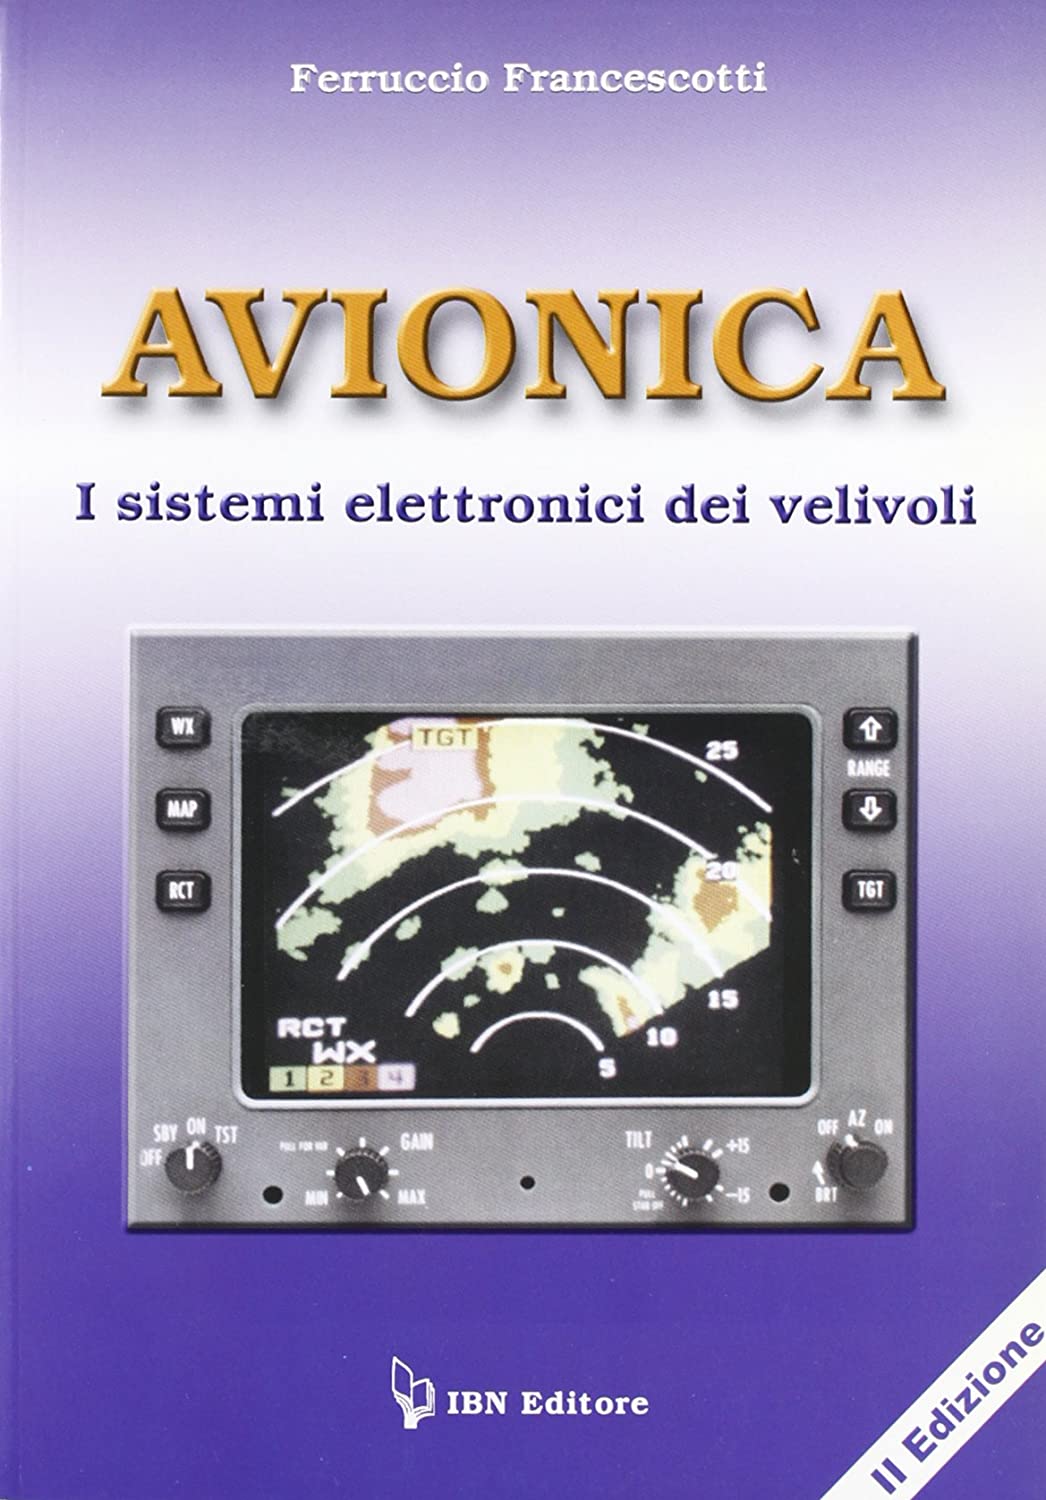 Libri Ferruccio Francescotti - Avionica. I Sistemi Elettronici Dei Velivoli NUOVO SIGILLATO, EDIZIONE DEL 11/07/2012 SUBITO DISPONIBILE